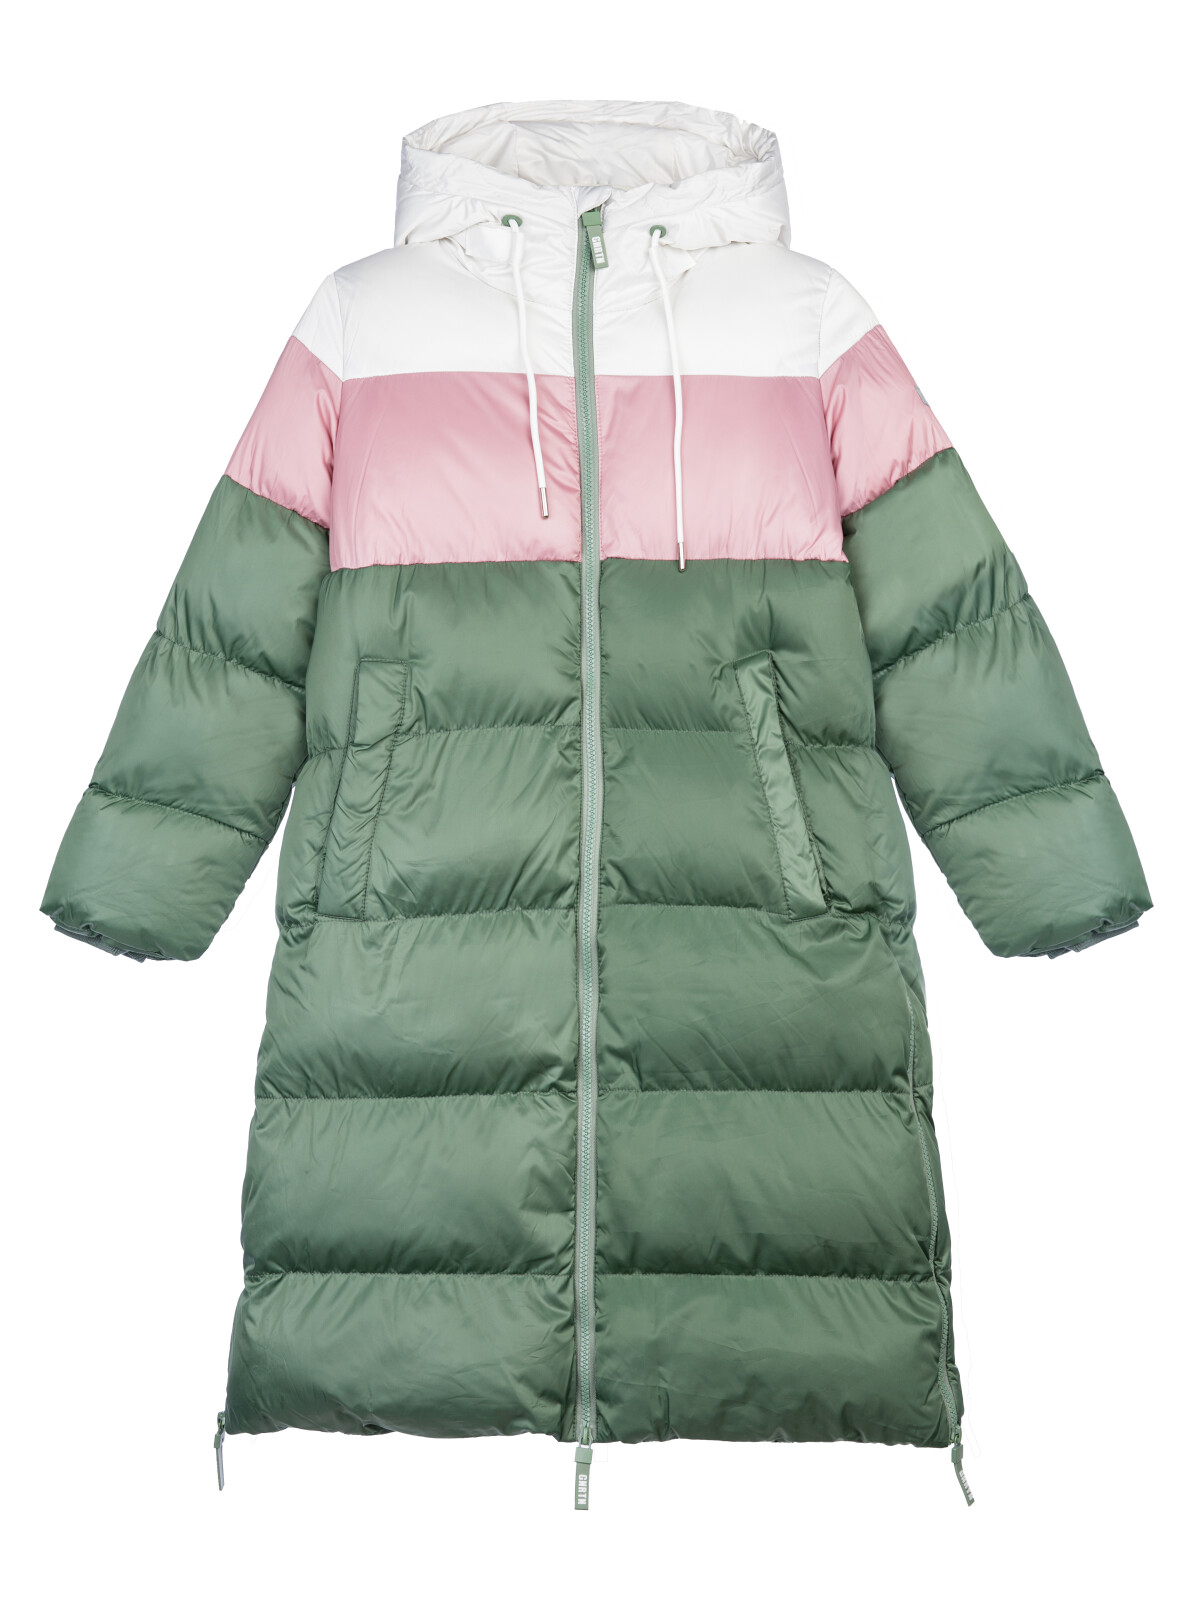 Пальто текстильное для девочек PlayToday, серебро,коричневый,темно-зеленый, 128